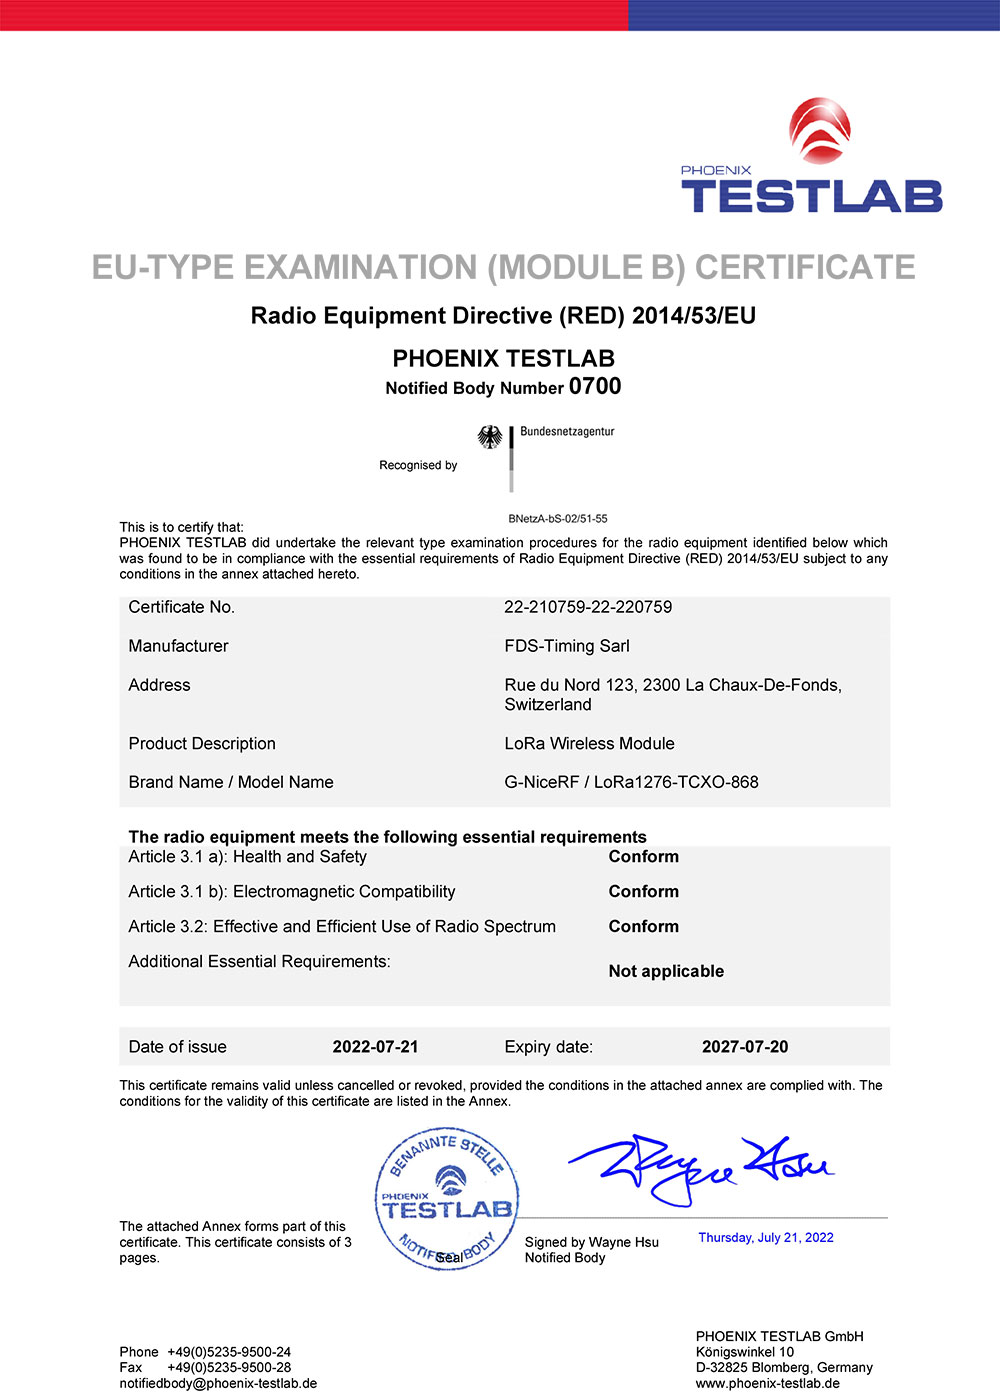 LoRa Module LoRa1276-TCXO-868 Pass CE-RED Certification